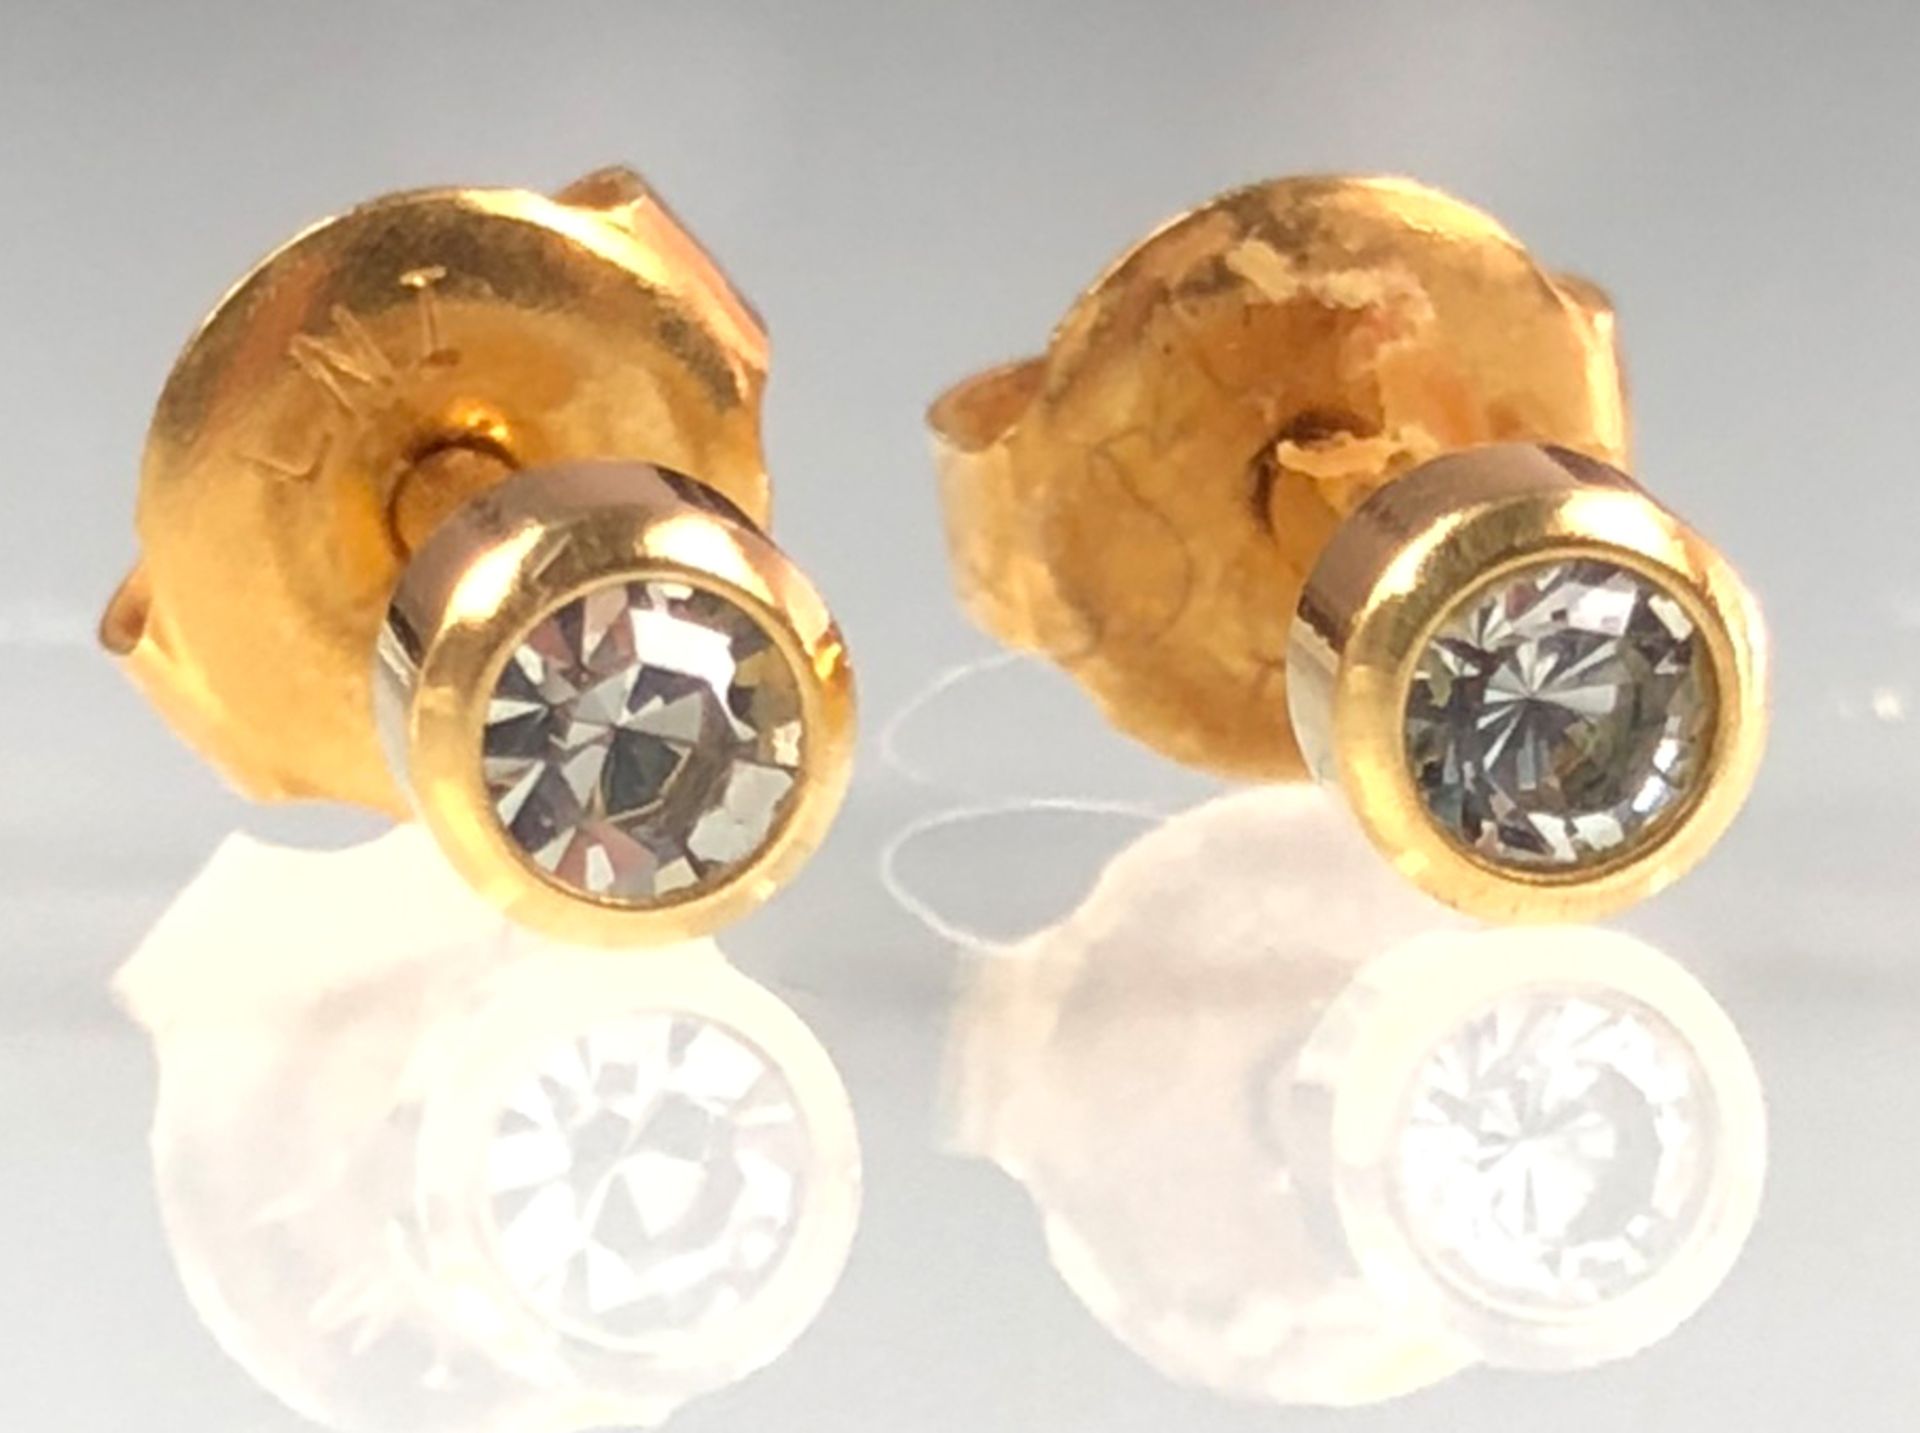 Ohrstecker Gelb Gold 750 mit Brillanten.0,7 Gramm Gesamtgewicht. Die Diamanten zusammen circa 0,15